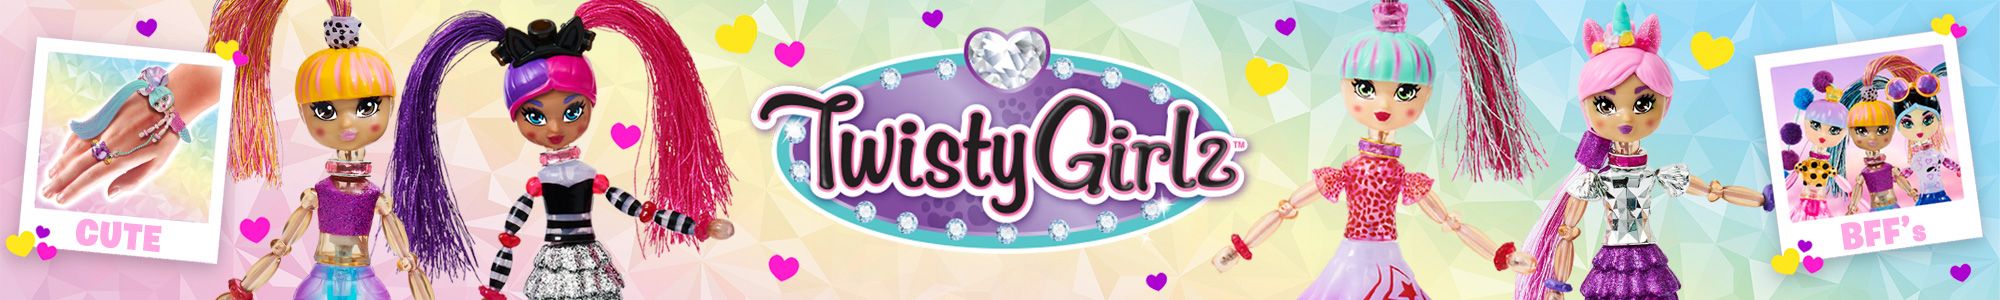 Twisty-Girls-Entertainer-Wesbite.jpg